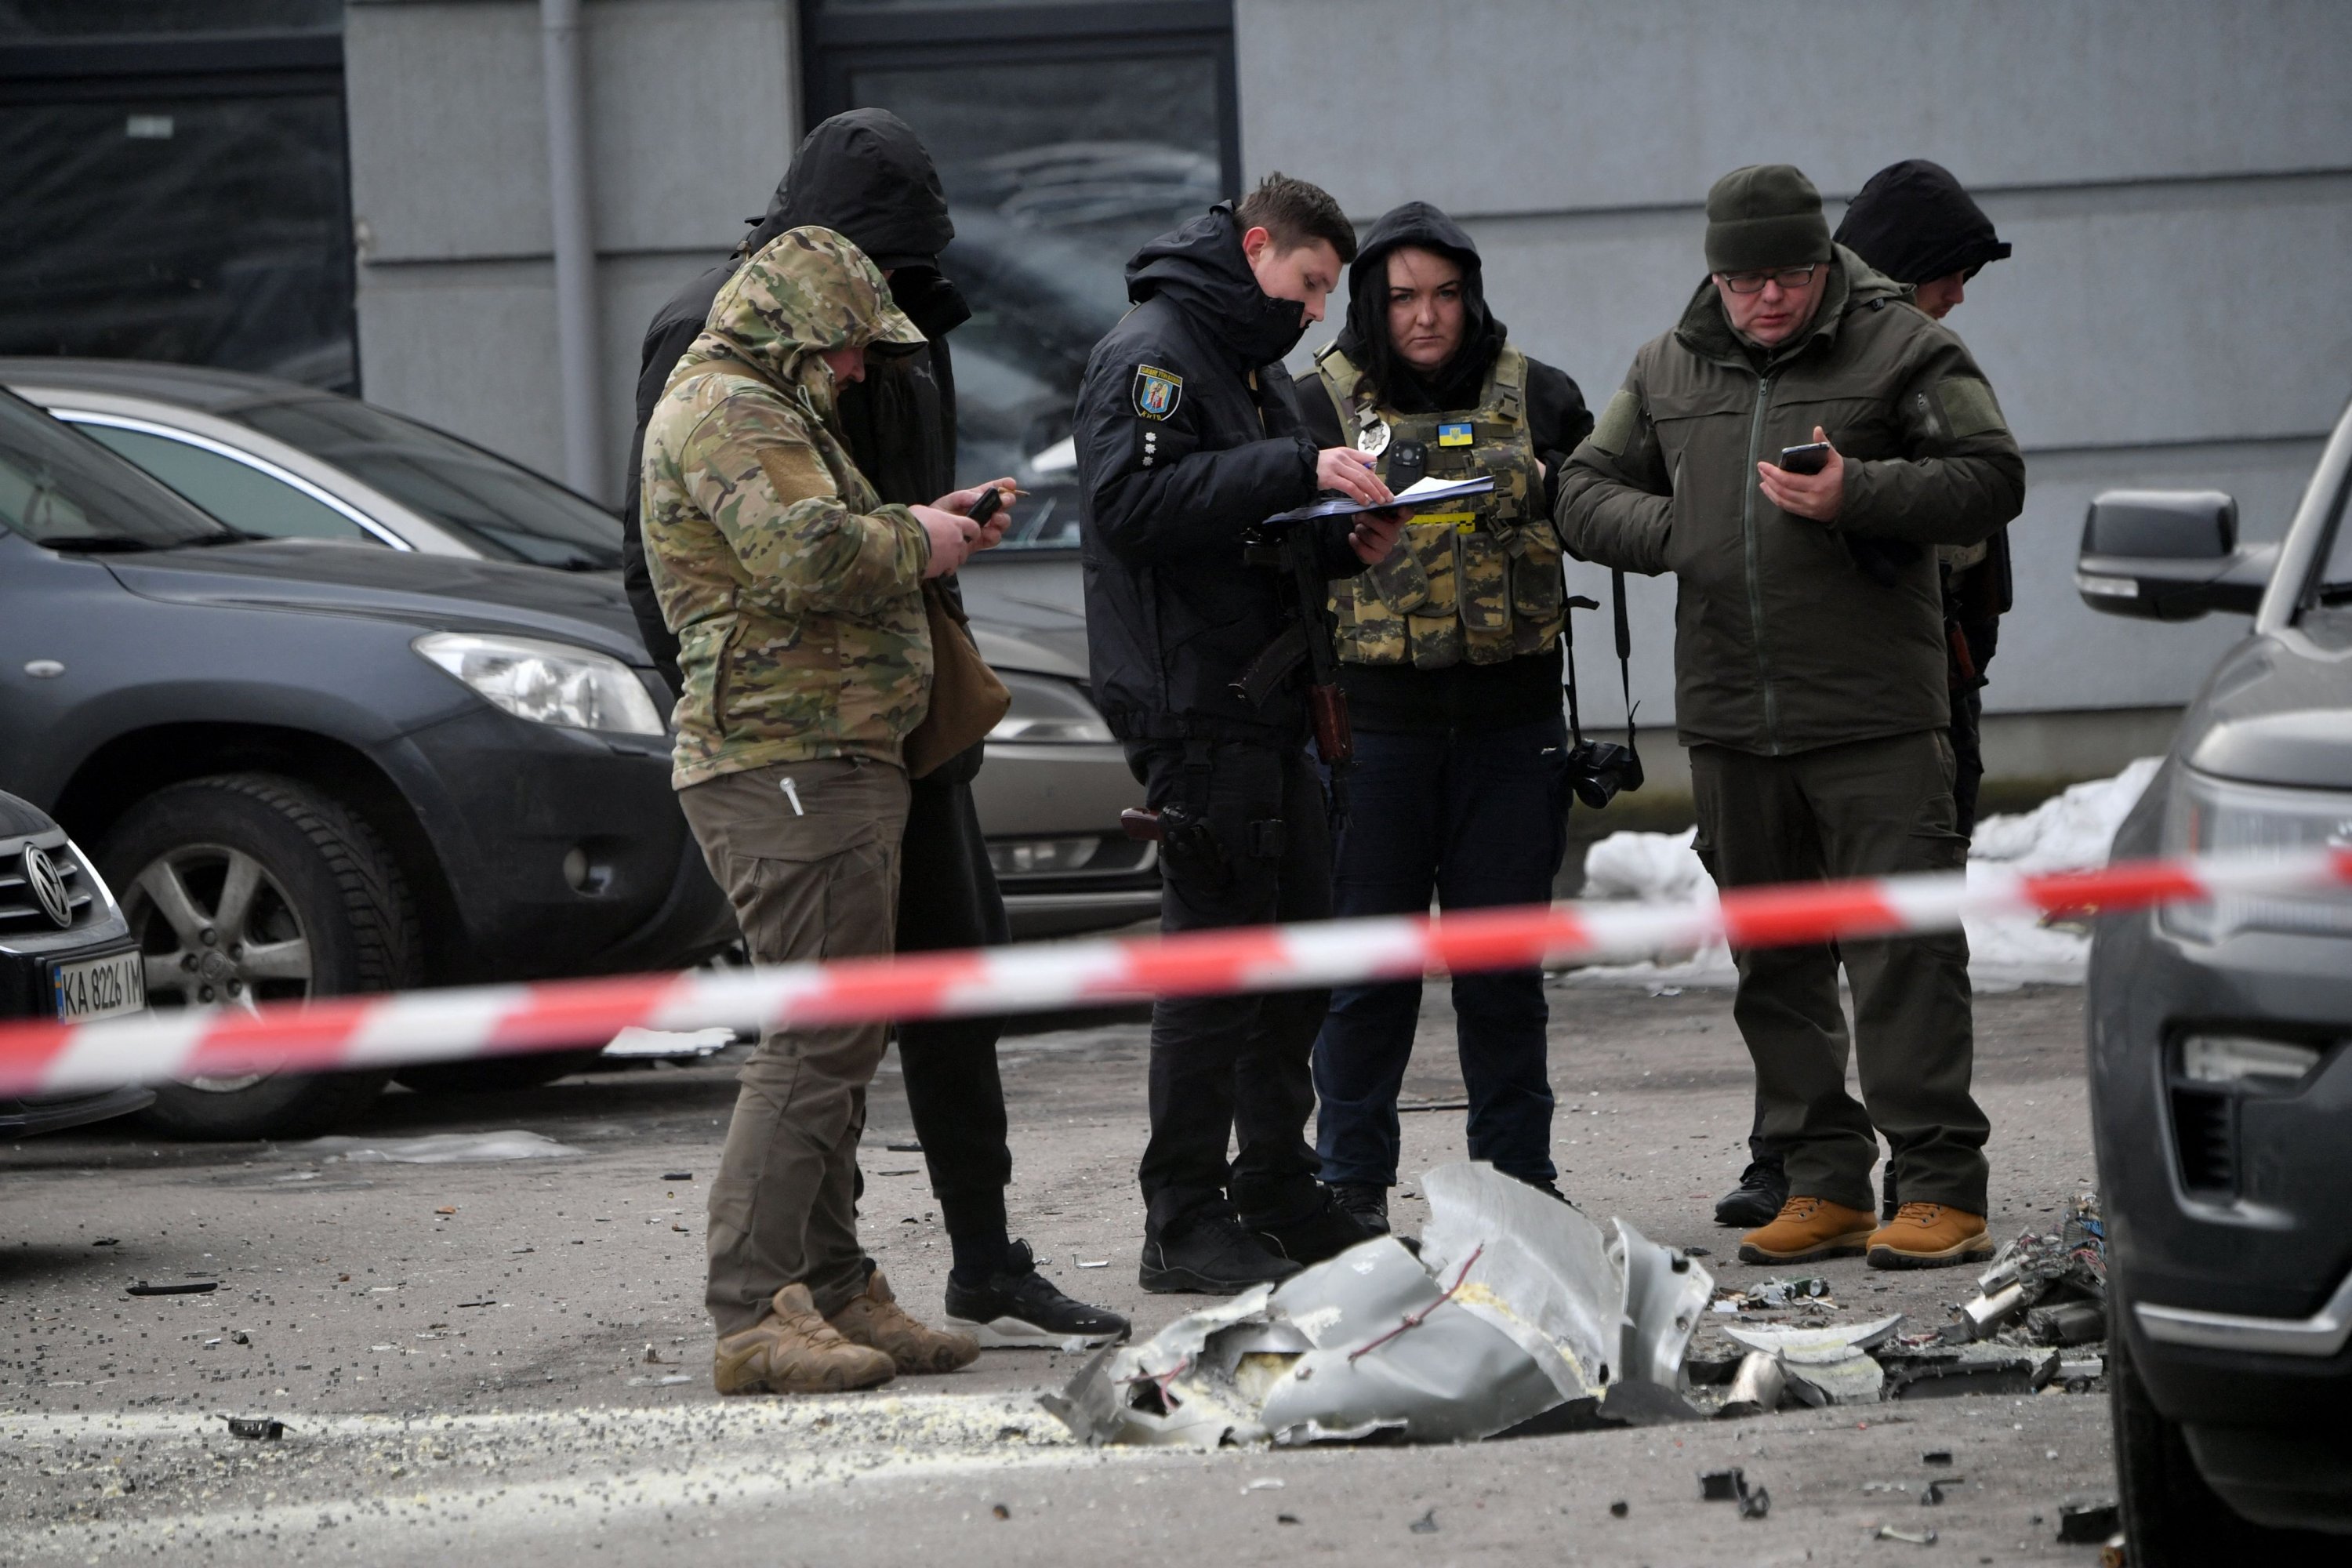 Pakar polisi memeriksa sisa-sisa peluru kendali yang jatuh di kendaraan yang diparkir di gedung perumahan bertingkat, Kyiv, Ukraina, 29 Desember 2022. (Foto AFP)